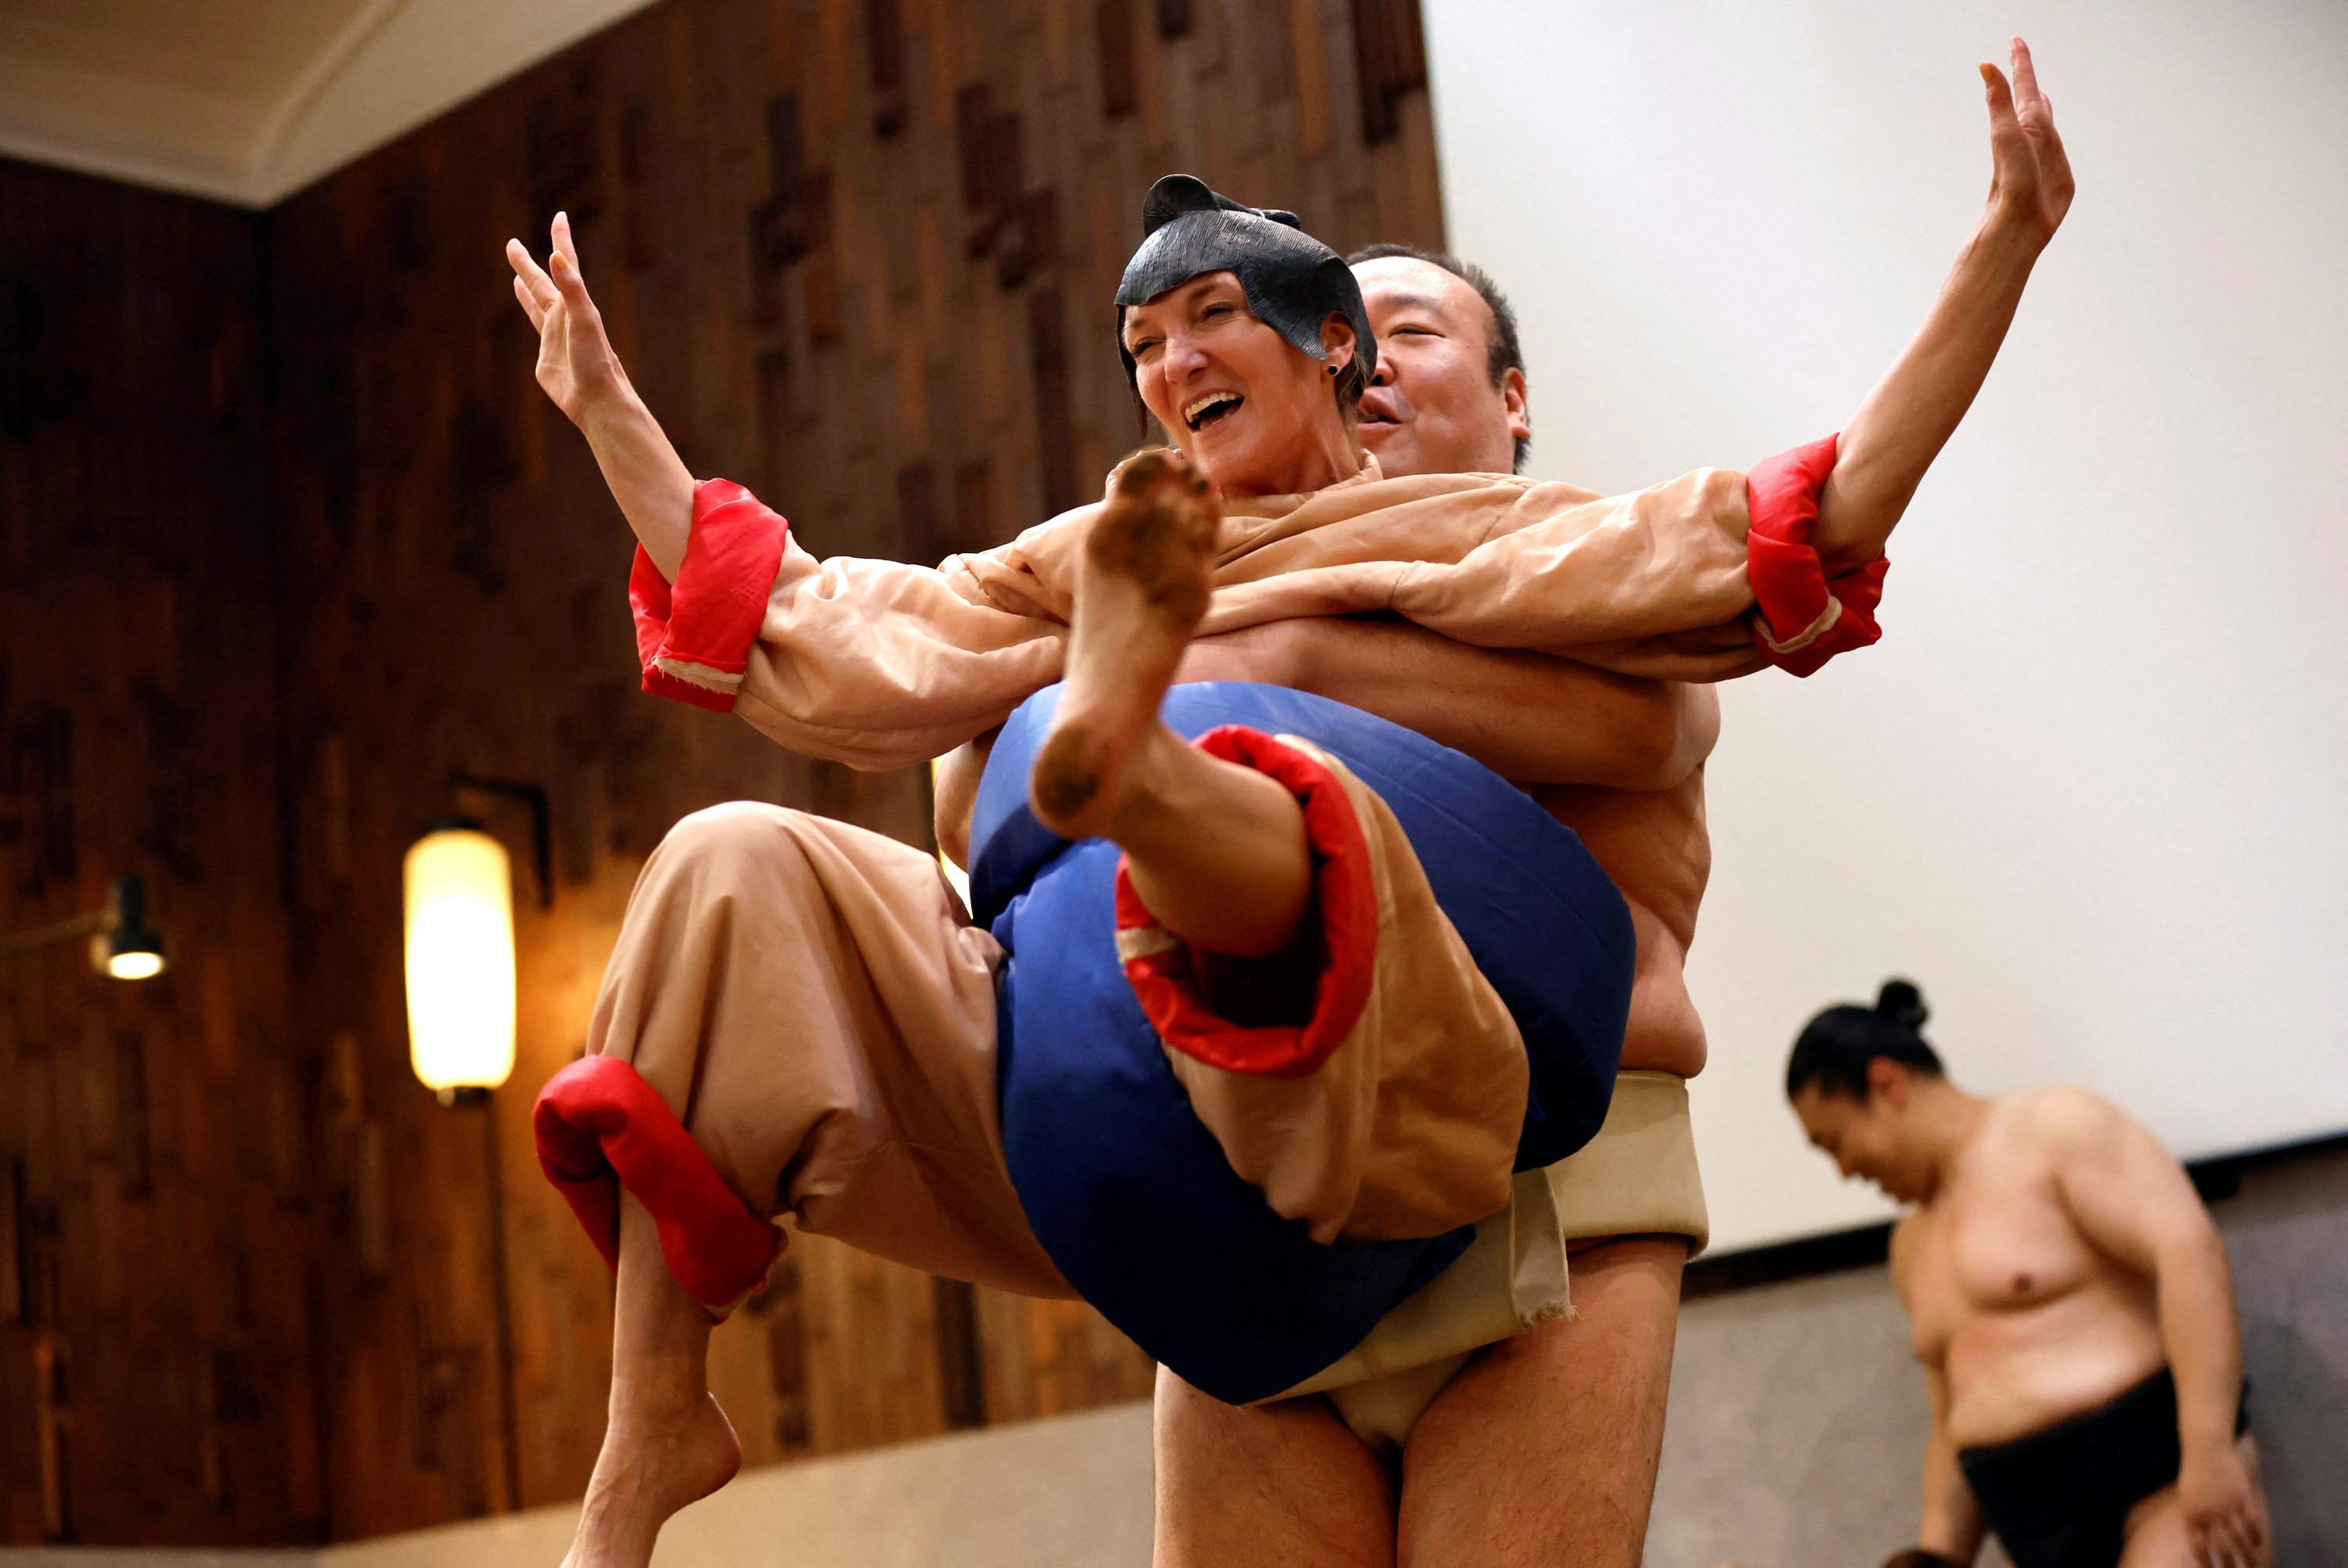 Nadine, seorang turis berusia 43 tahun dari AS, mengenakan kostum pegulat sumo, mencoba bertanding melawan mantan pegulat sumo Towanoyama di ring sumo di depan turis dari luar negeri, Tokyo, Jepang, 30 Juni 2023. (Foto Reuters)